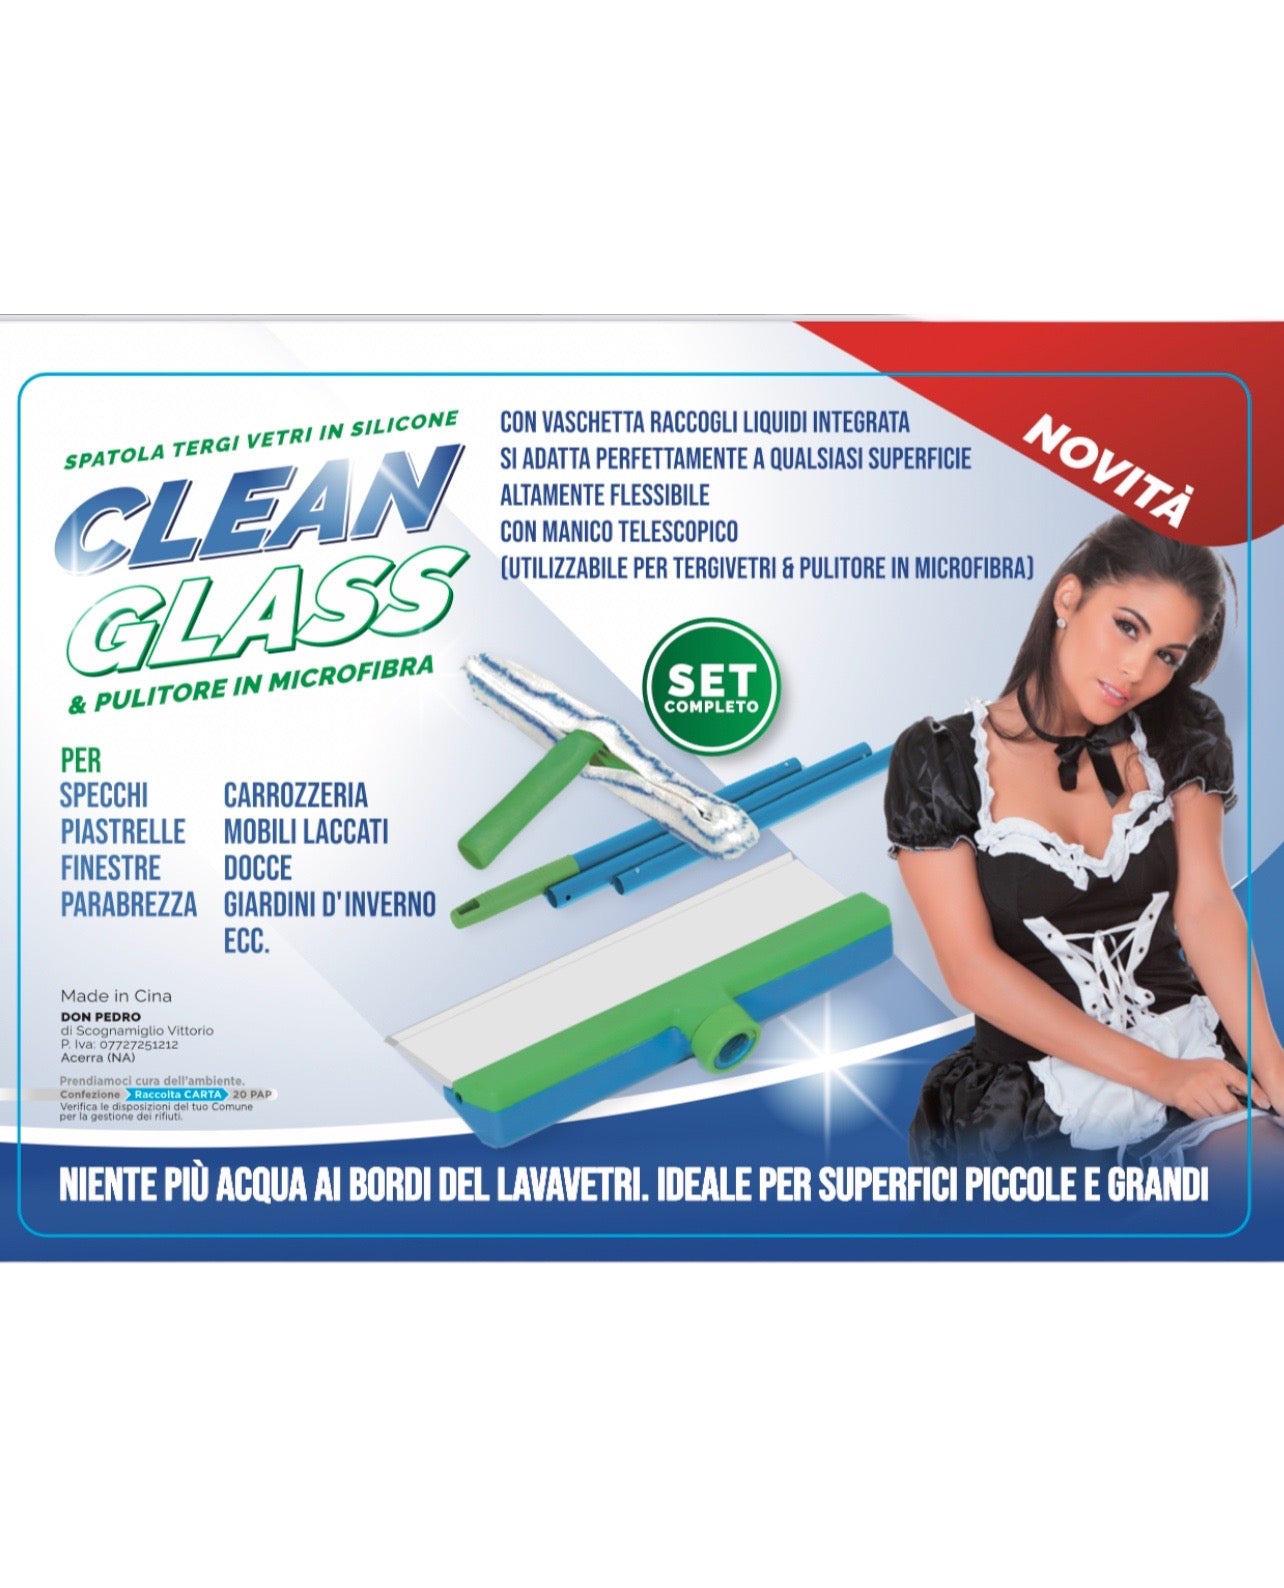 Clean Glass professional set – Pedro Shop - Tutto quello che ti serve!